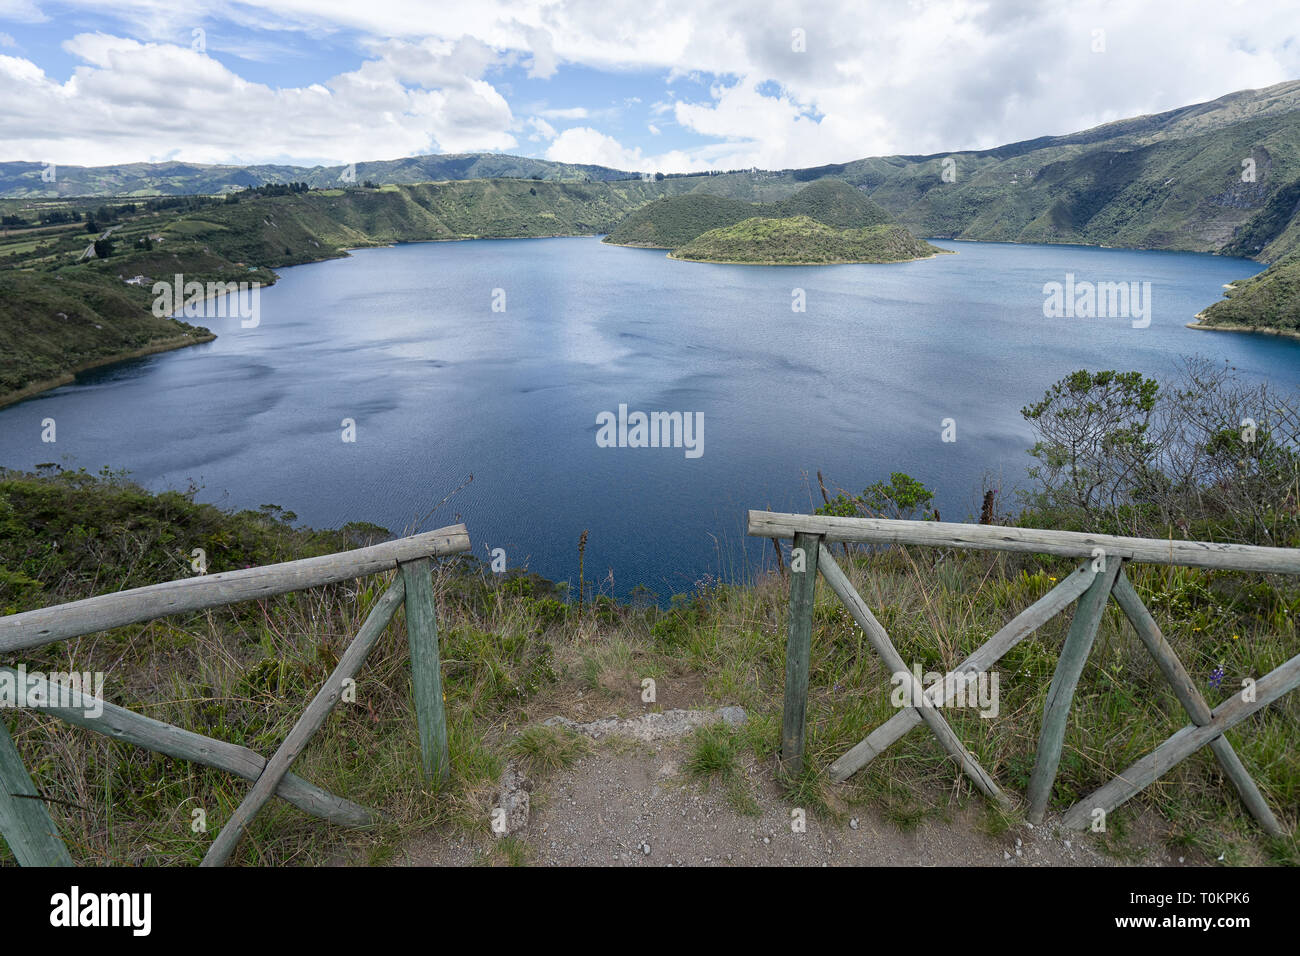 Cuicocha lake in Ecuador Stock Photo